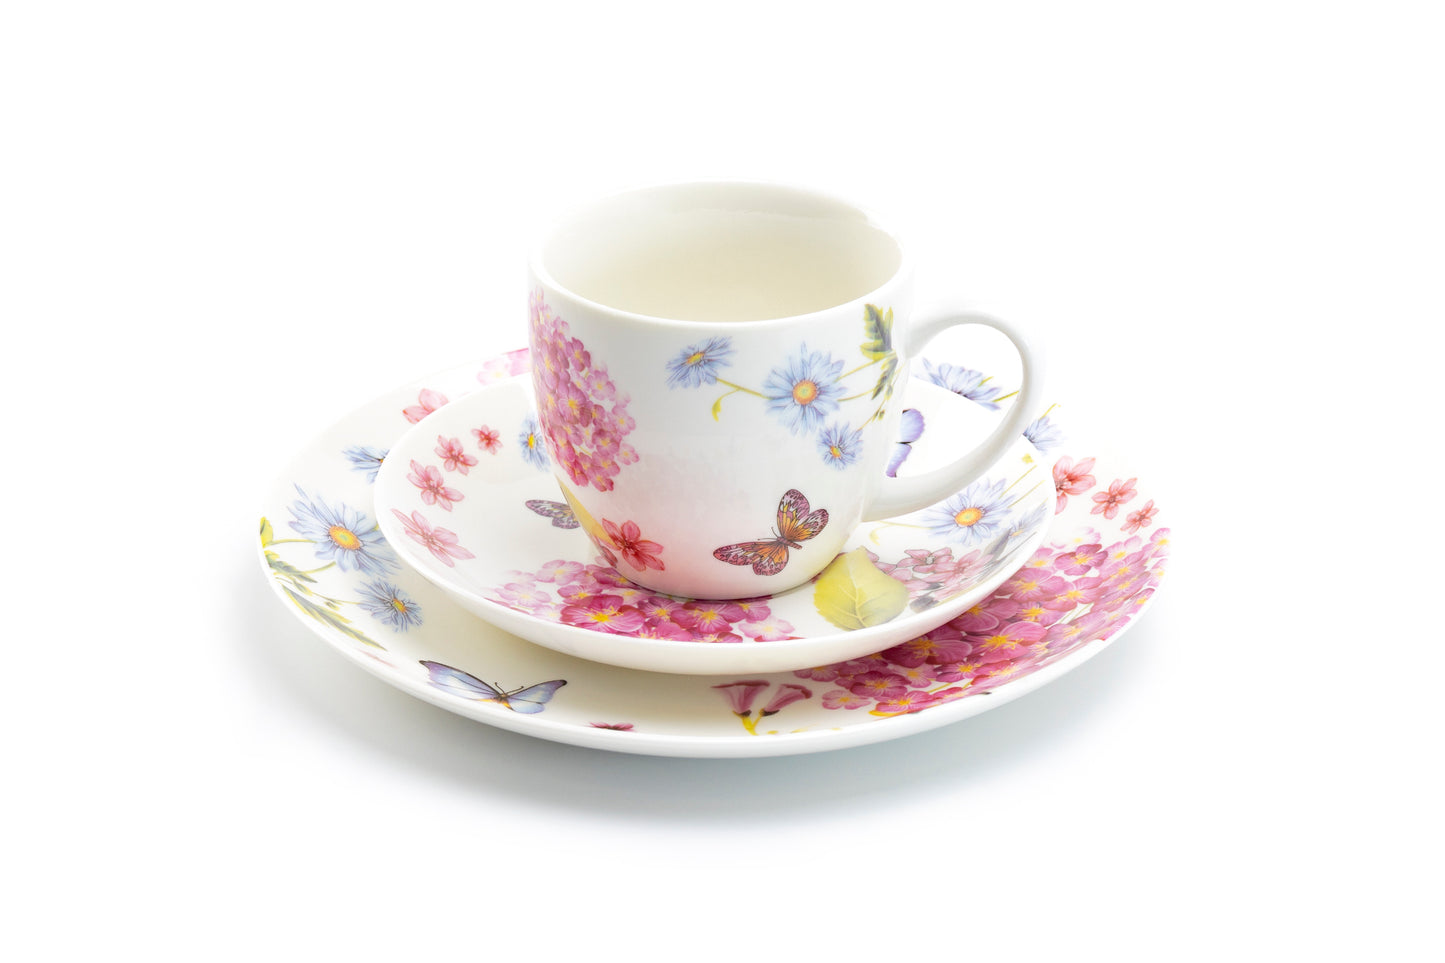 Hydrangea with Butterflies Fine Porcelain Dessert / Dinner Plate